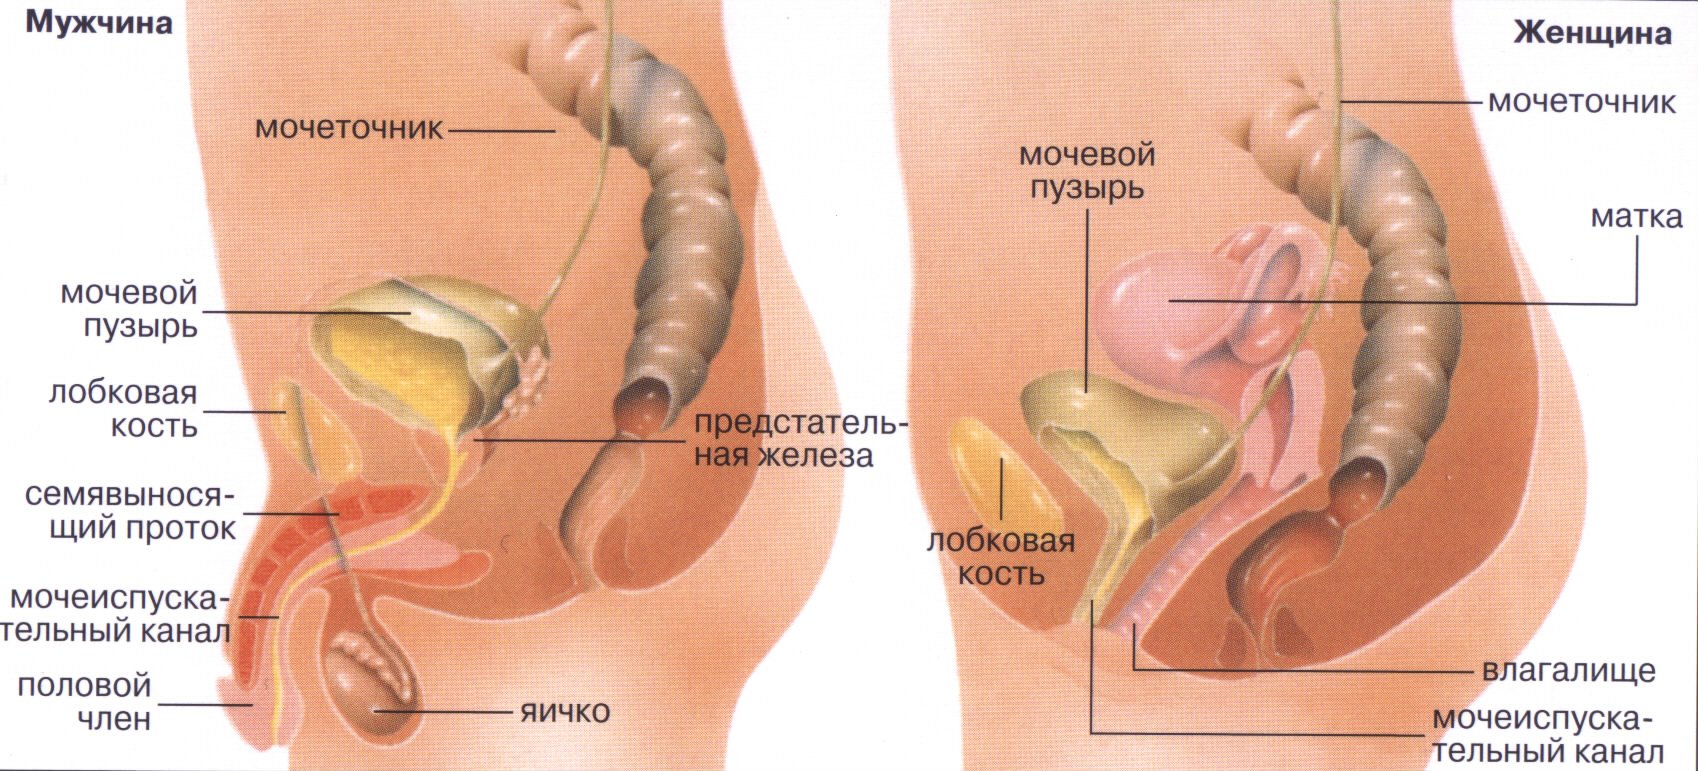 Мочевой у мужчины расположение. Мочевой пузырь анатомия расположение. Анатомия мужской мочеполовой системы. Мочеточник у женщин расположение. Анатомия мочеполовой системы женщины.